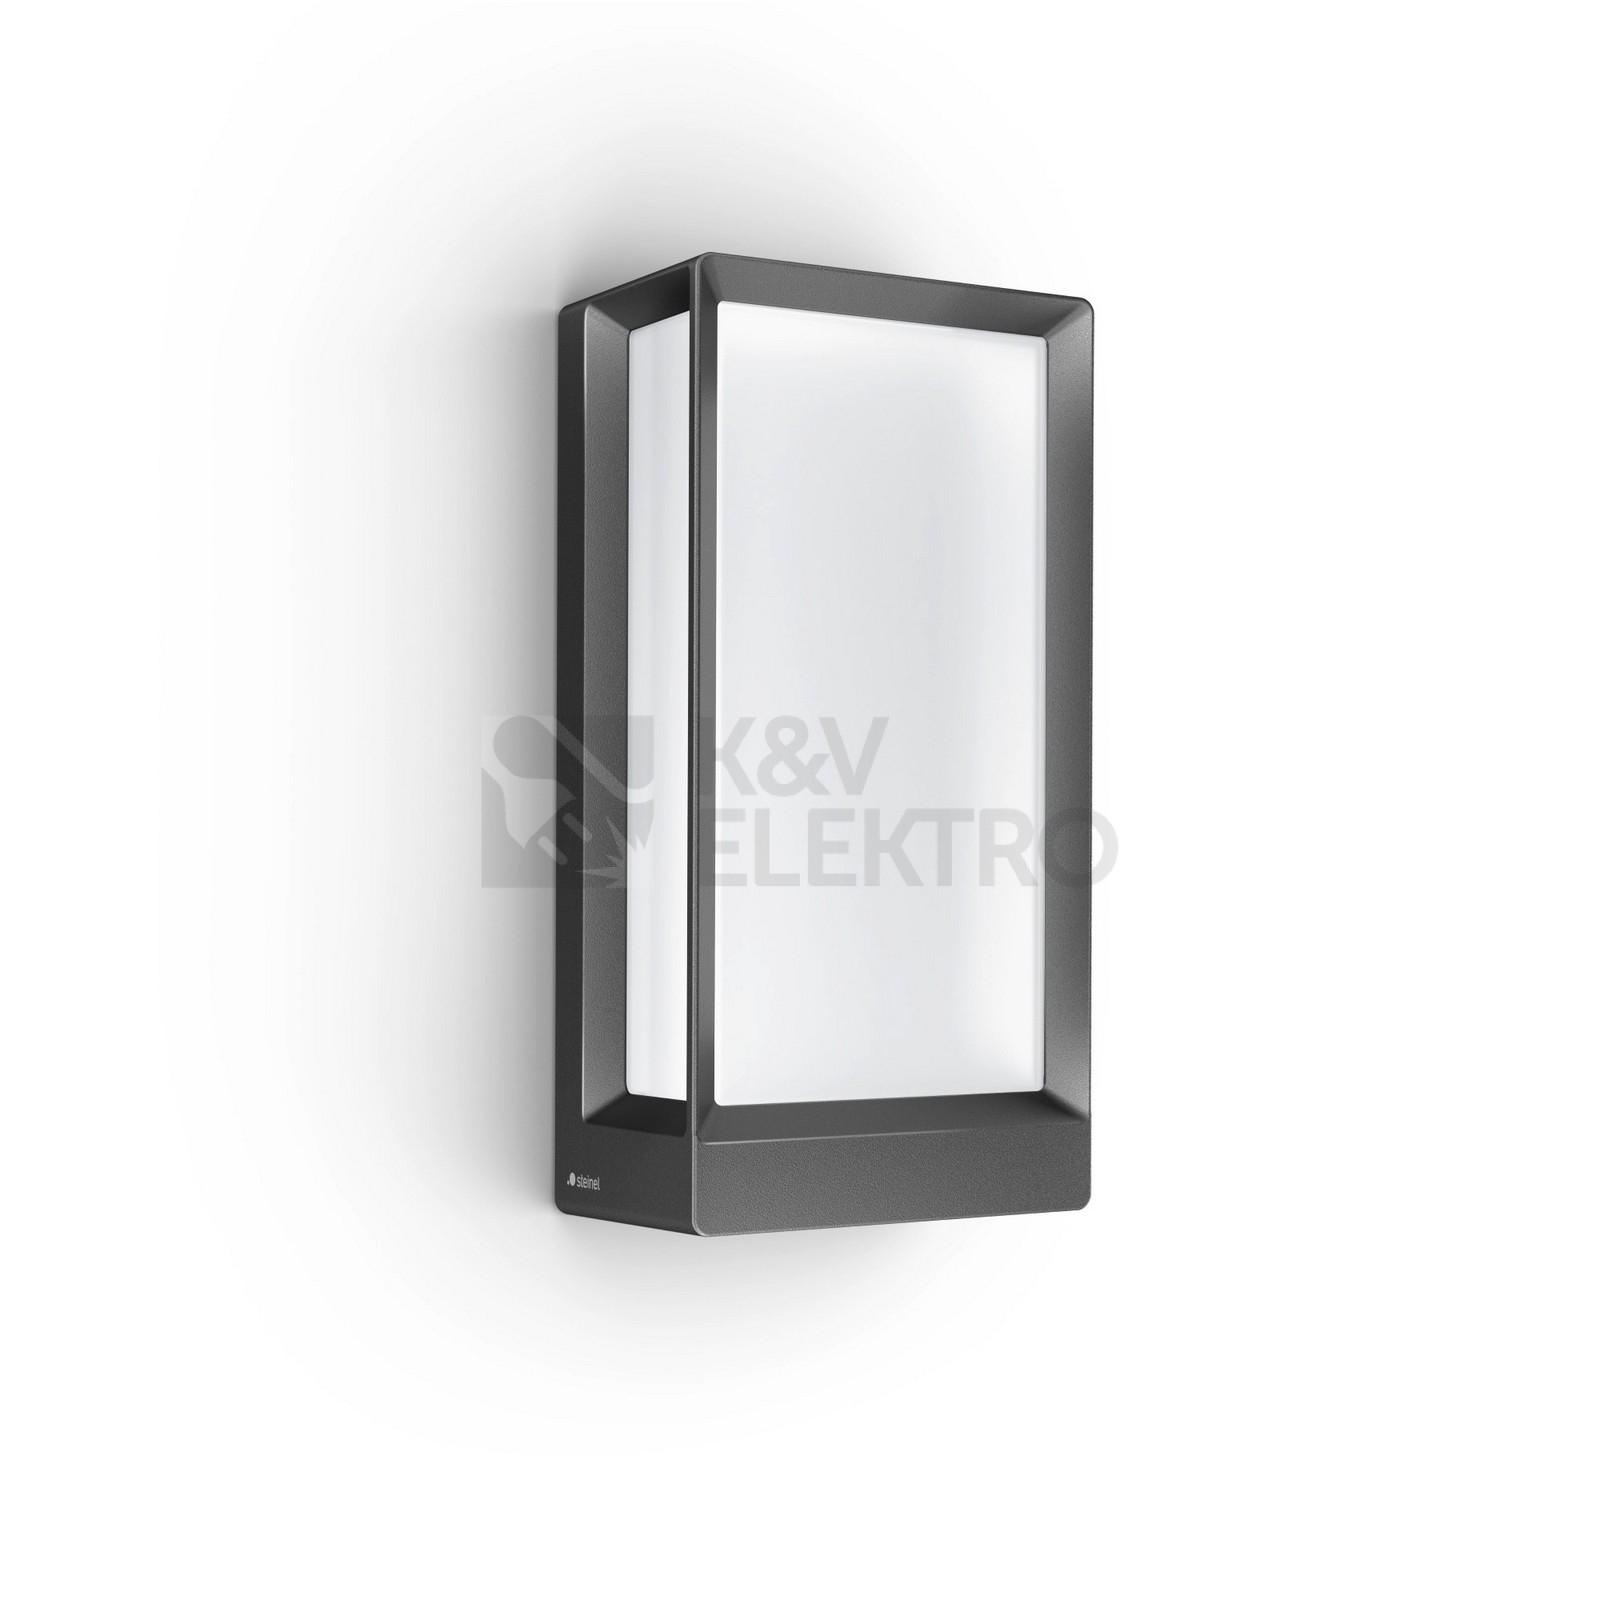 Obrázek produktu LED venkovní nástěnné svítidlo Steinel L 42 C antracit 085254 12,6W 990lm 3000K 0